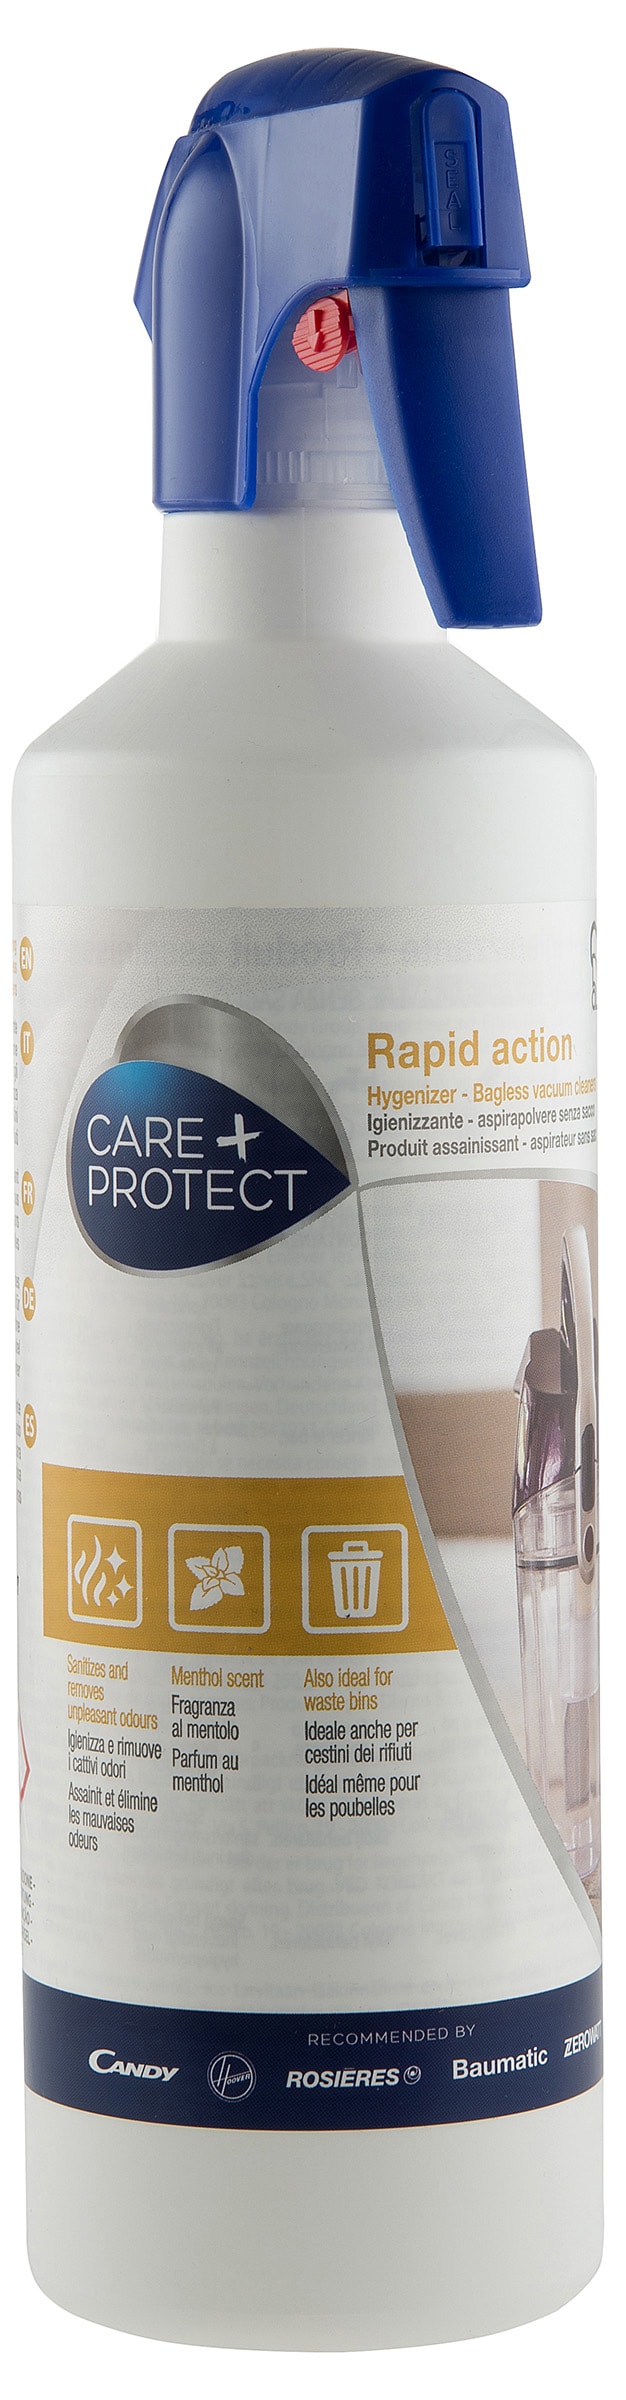 CARE + PROTECT Accessoire aspirateur   CSL9001/1